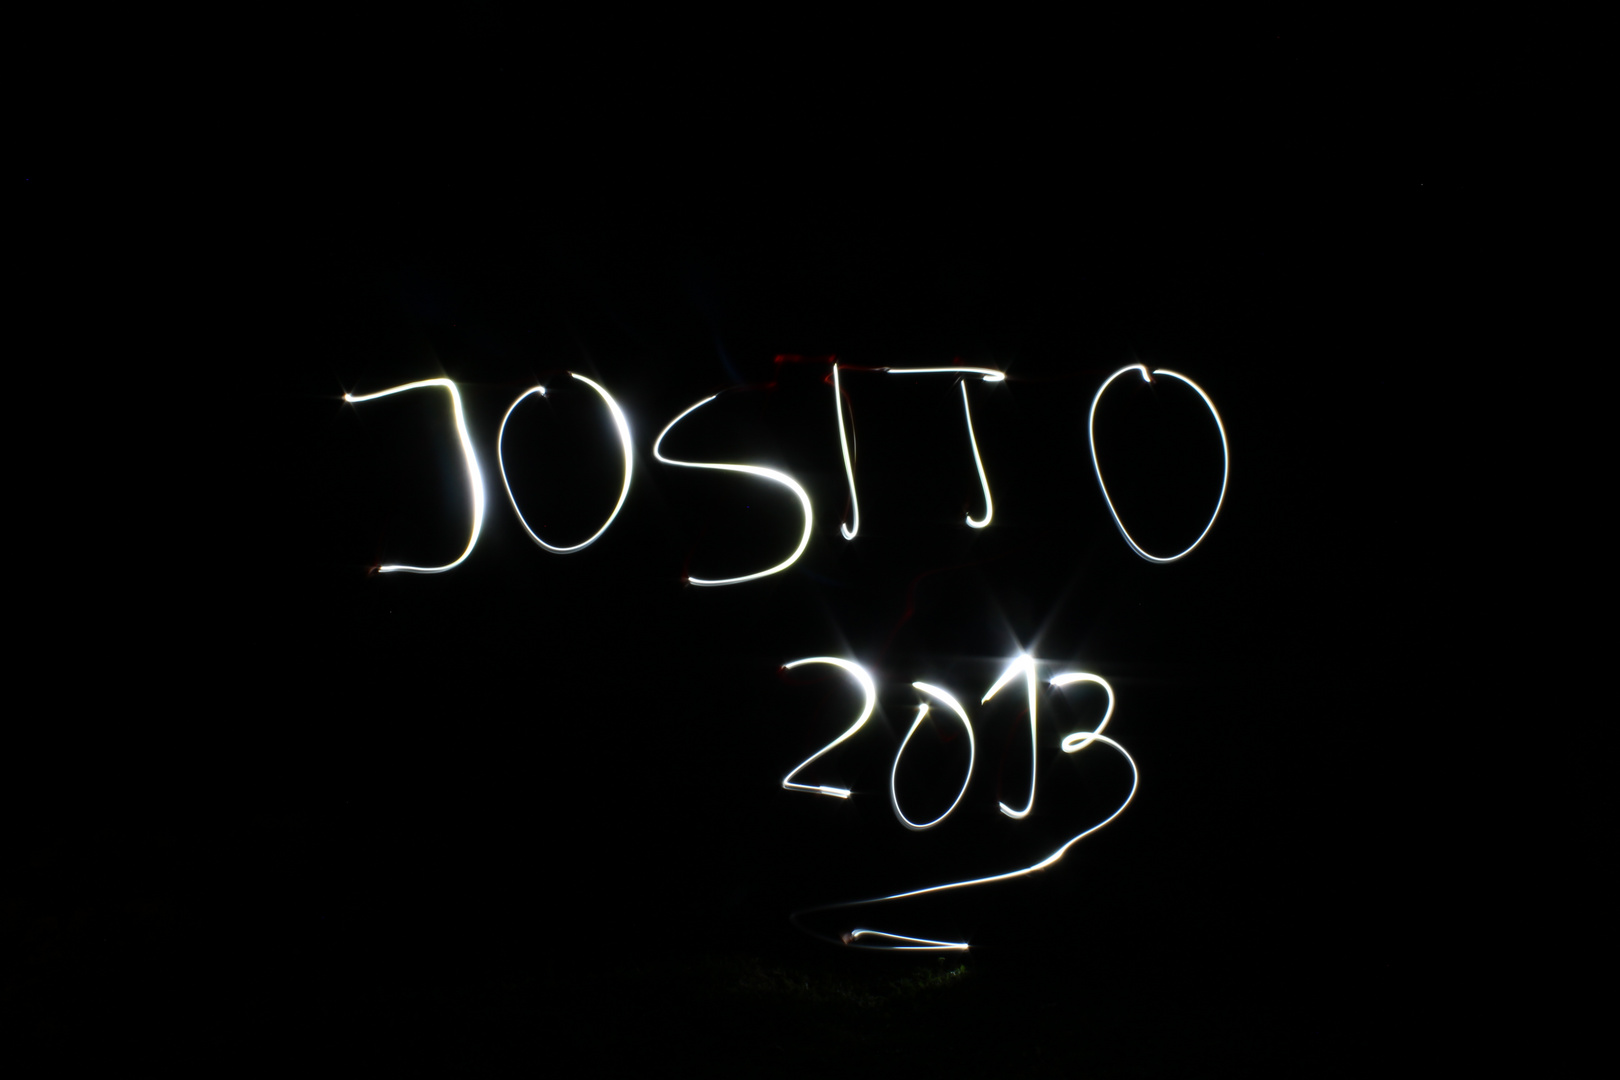 JoSiTo Camp 2013